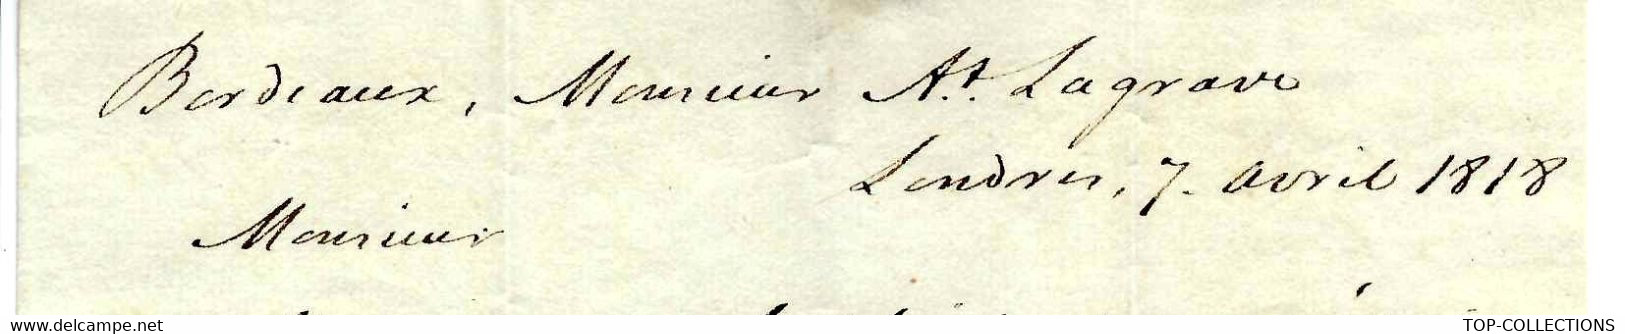 1818 PROTESTANTISME NECKER  COMPAGNIE DES INDES  COMMERCE NEGOCE INTERNATIONAL  Par James Bourdieu & Sons à Londres - Historische Documenten